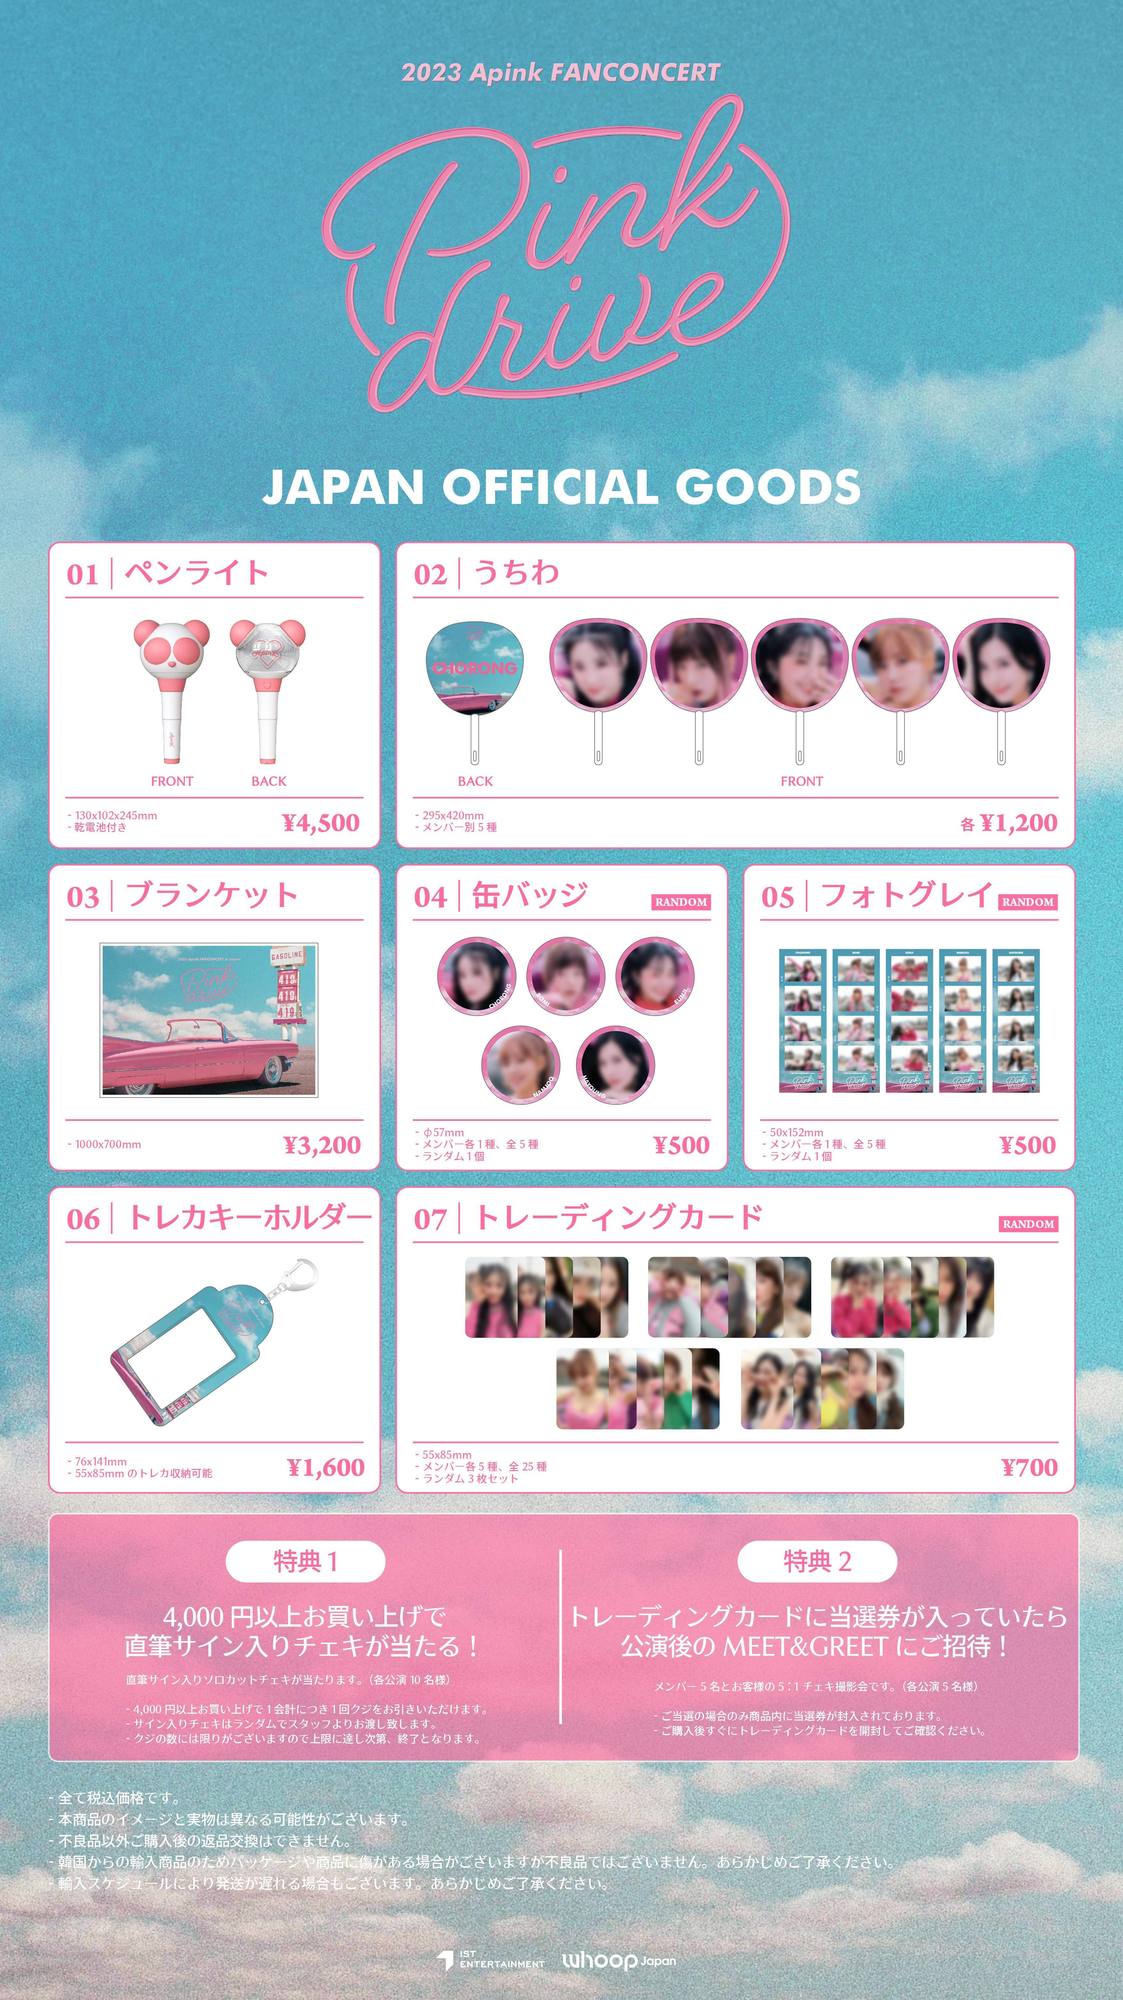 2023 Apink FANCONCERT in Japan [Pink drive]オフィシャルグッズ販売 ...